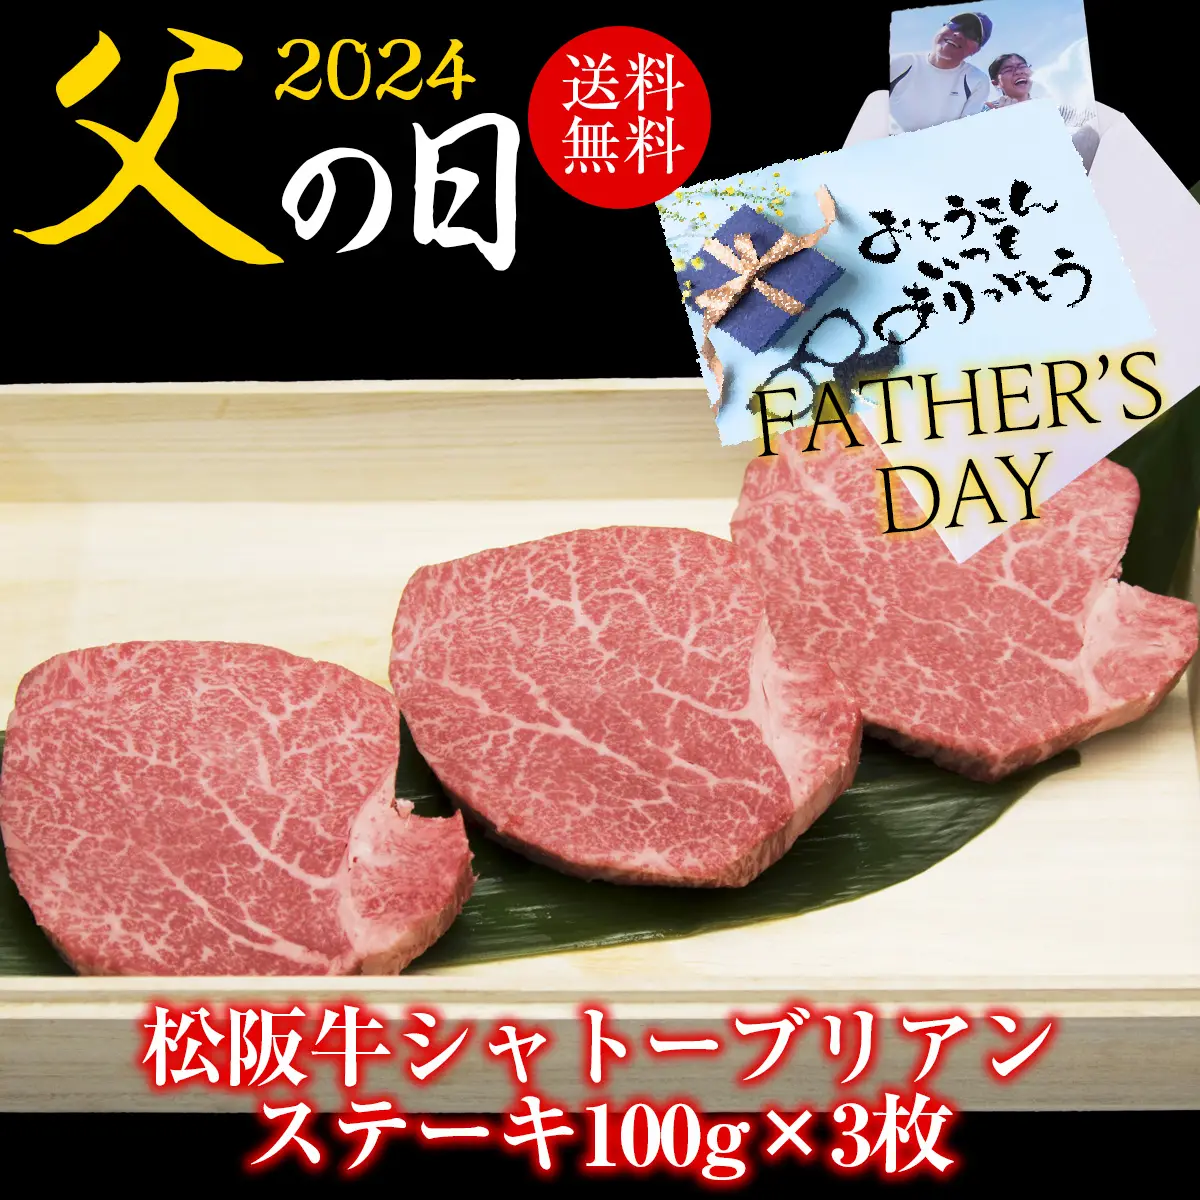 【父の日】松阪牛A5 シャトーブリアン（ヒレ) ステーキ100g×3枚セット